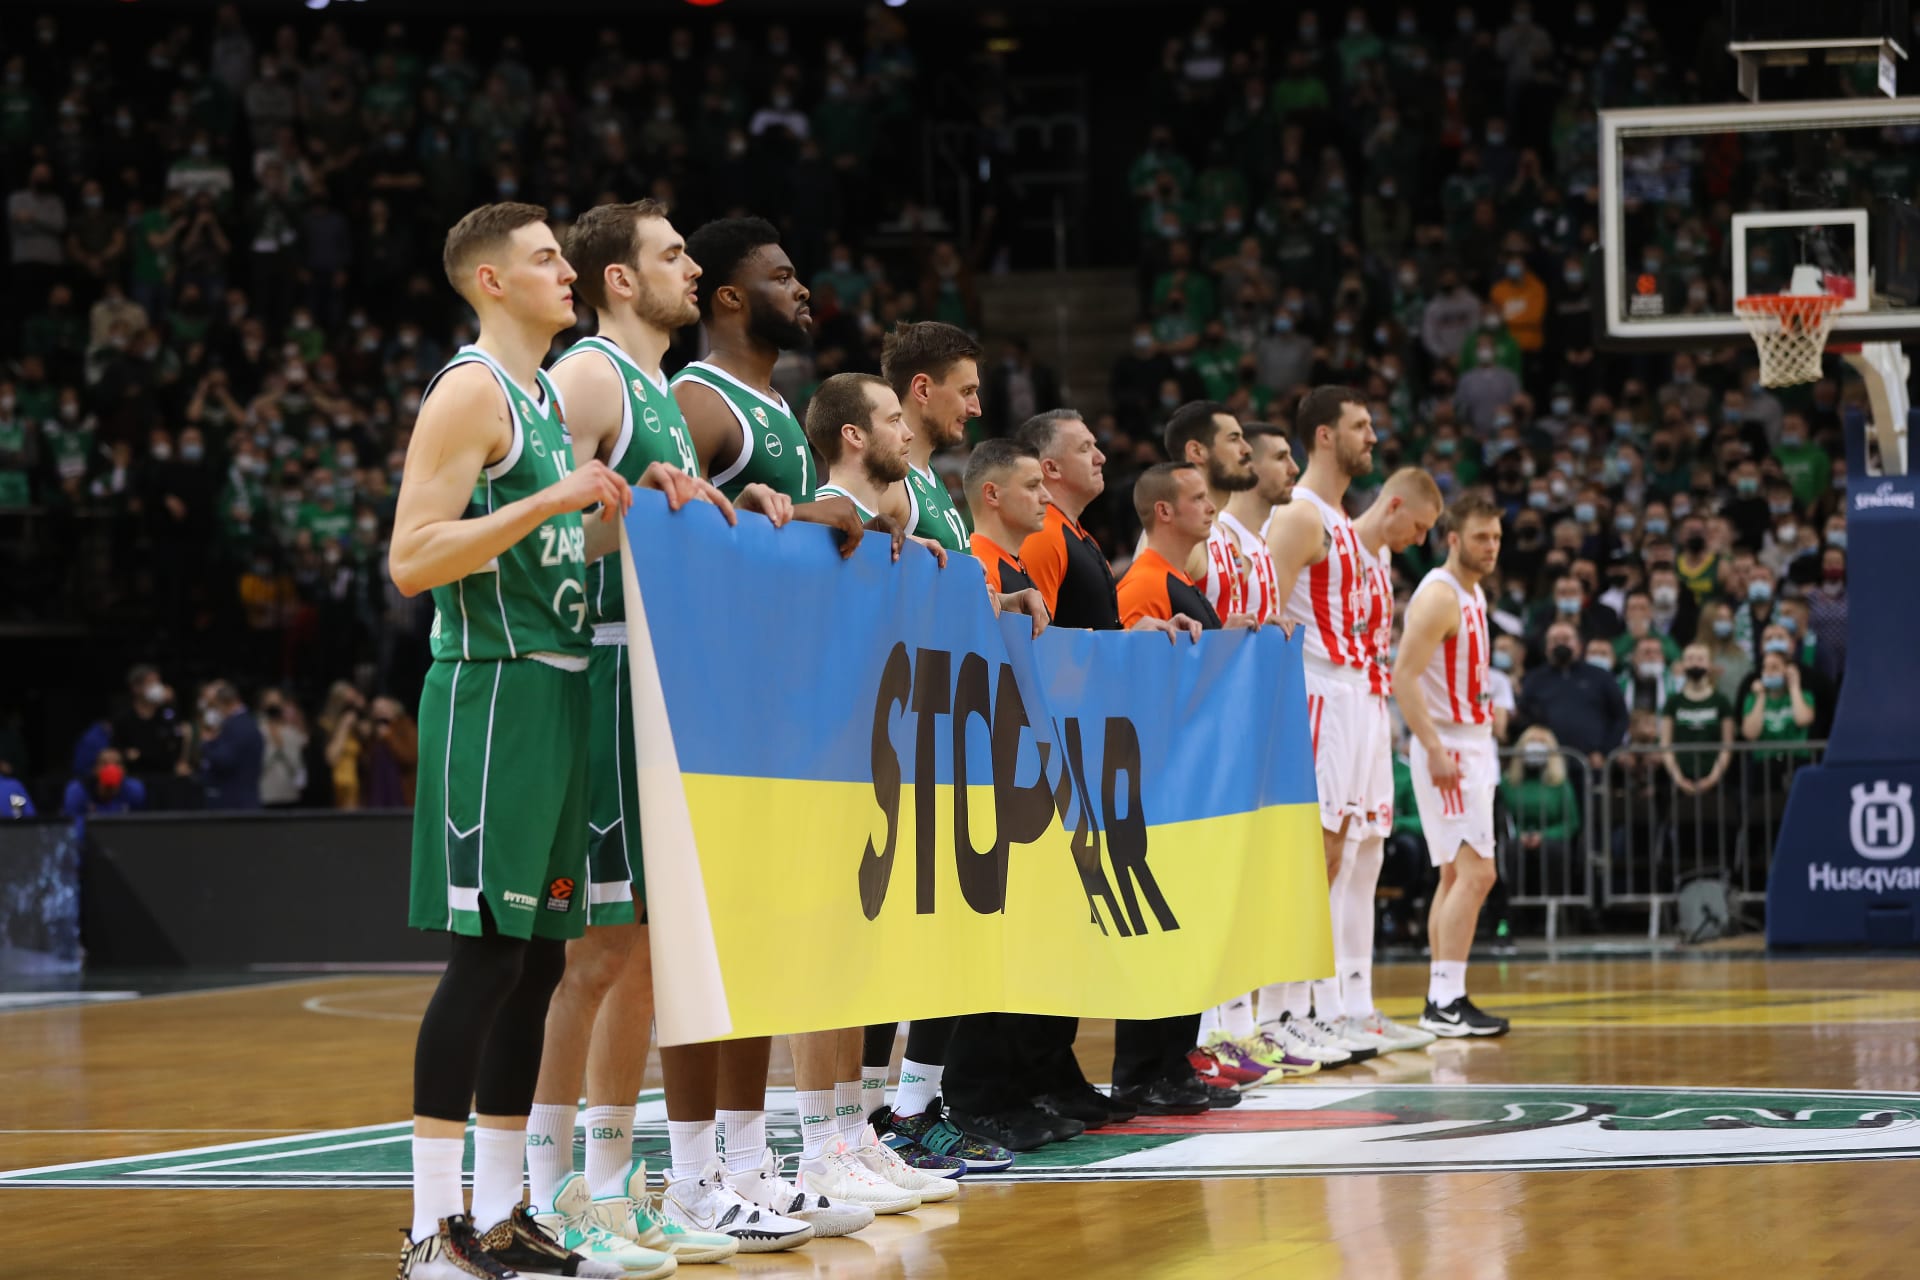 Zatímco basketbalisté Žalgrisu drželi transparent s ukrajinskou vlajkou, srbští hráči jen dali ruce za záda.